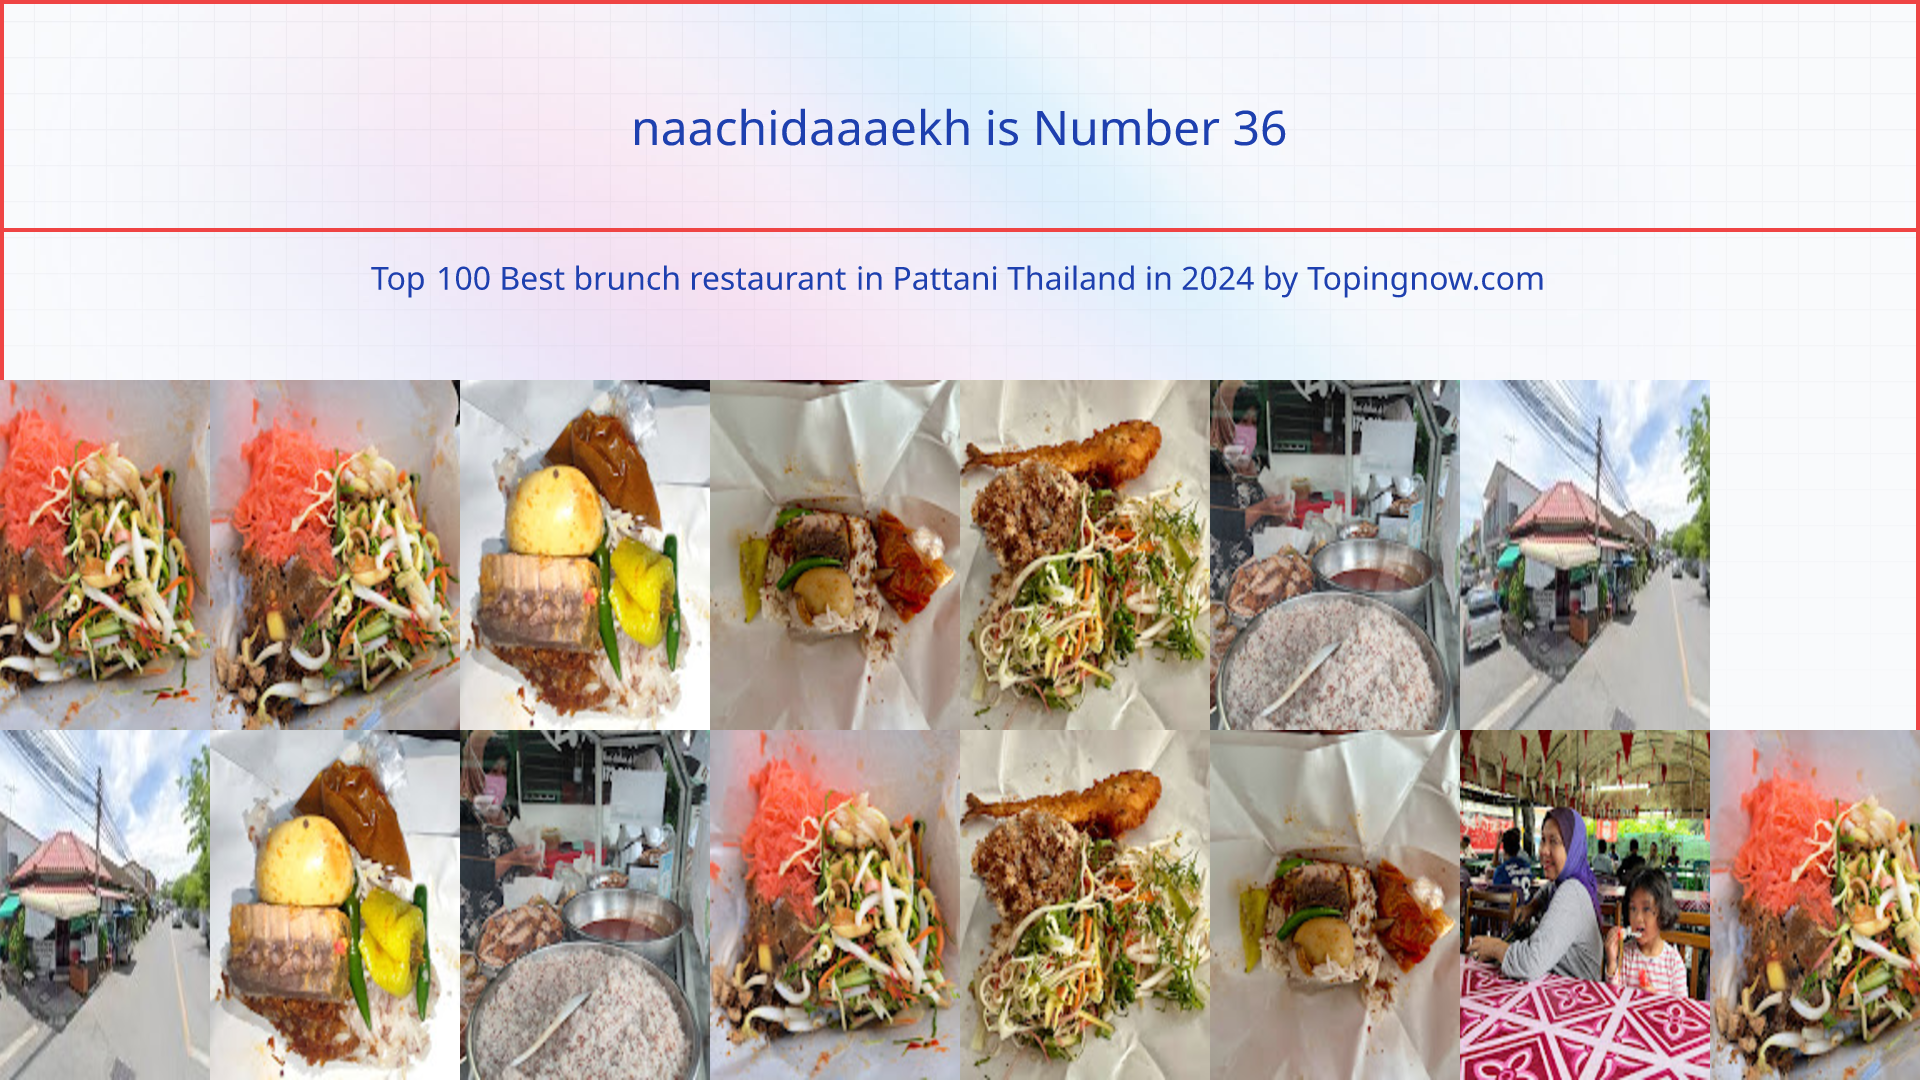 naachidaaaekh: Top 100 Best brunch restaurant in Pattani Thailand in 2024